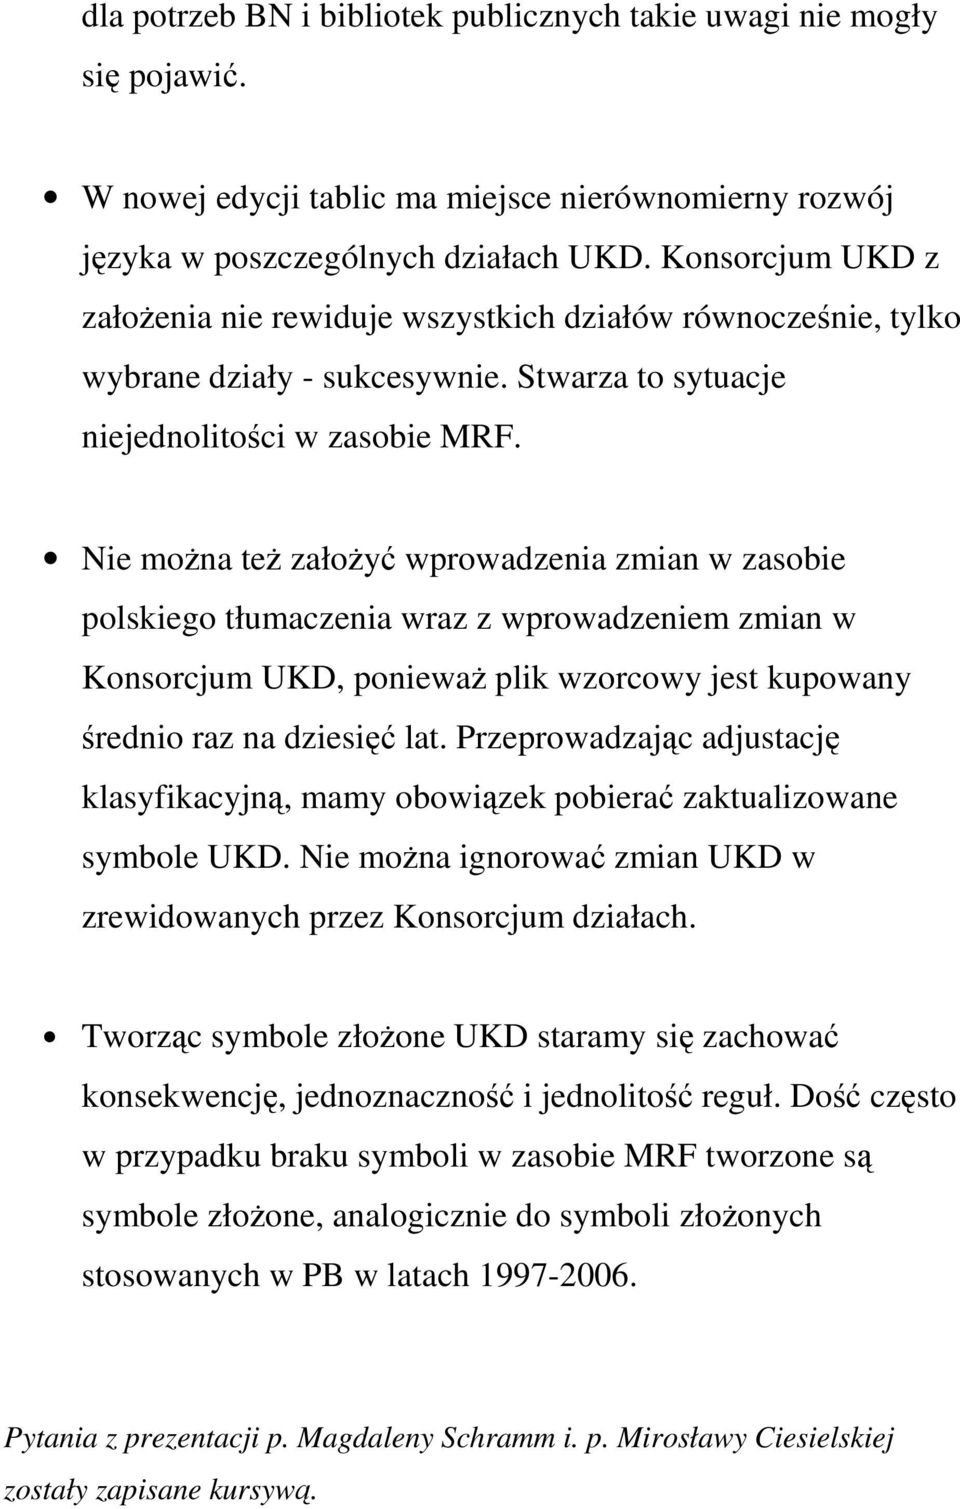 Nie można też założyć wprowadzenia zmian w zasobie polskiego tłumaczenia wraz z wprowadzeniem zmian w Konsorcjum UKD, ponieważ plik wzorcowy jest kupowany średnio raz na dziesięć lat.